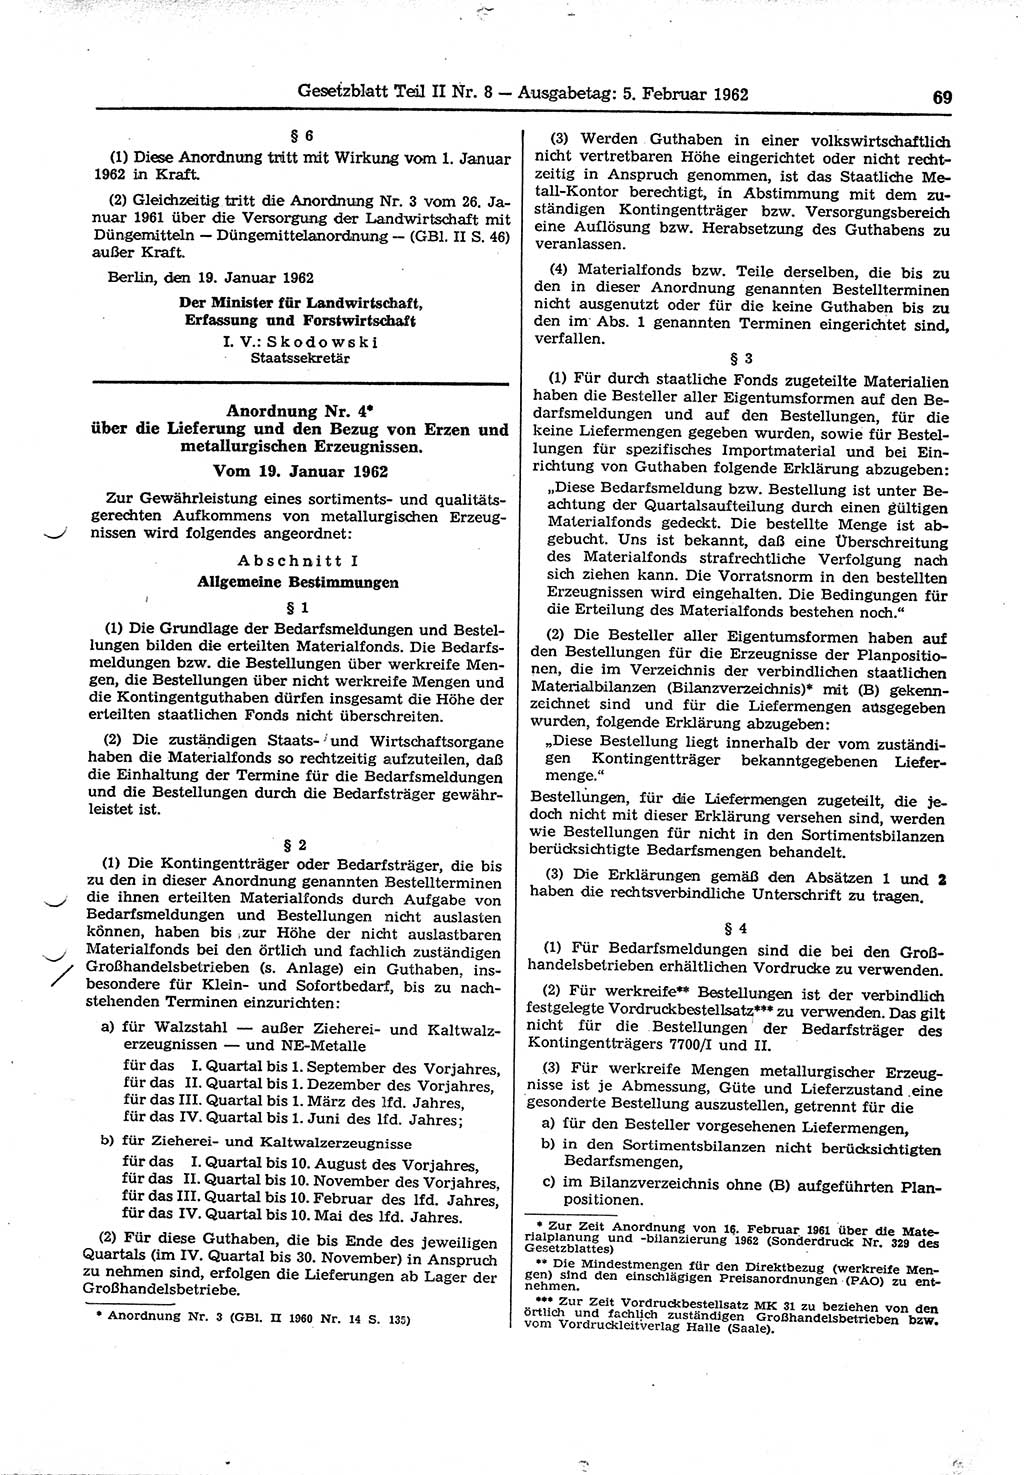 Gesetzblatt (GBl.) der Deutschen Demokratischen Republik (DDR) Teil ⅠⅠ 1962, Seite 69 (GBl. DDR ⅠⅠ 1962, S. 69)